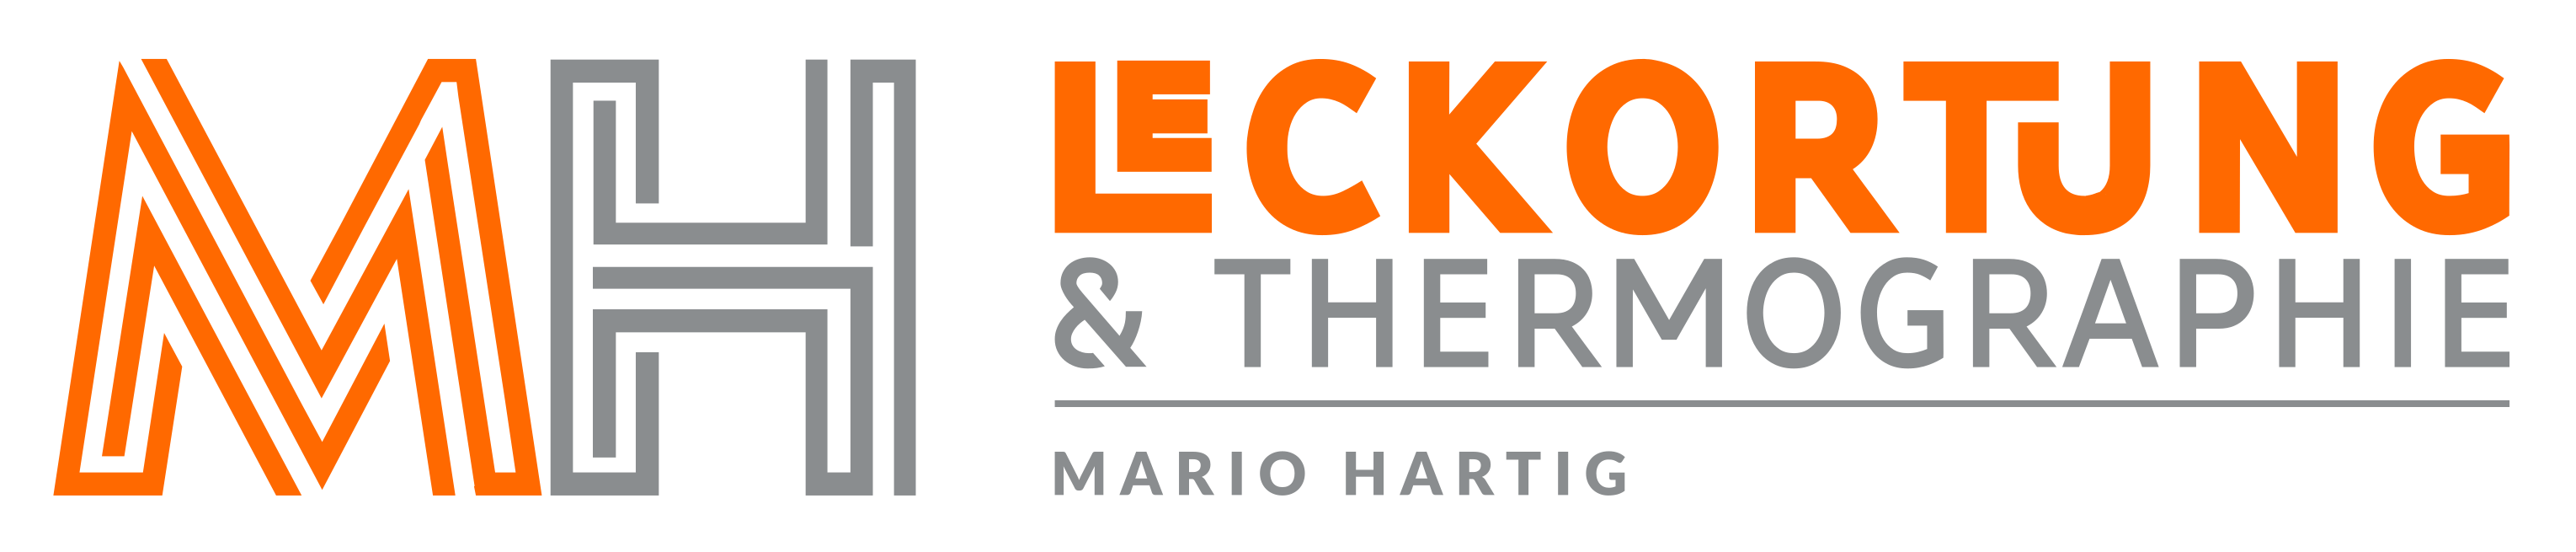 MH – Leckortung & Thermographie | Mario Hartig